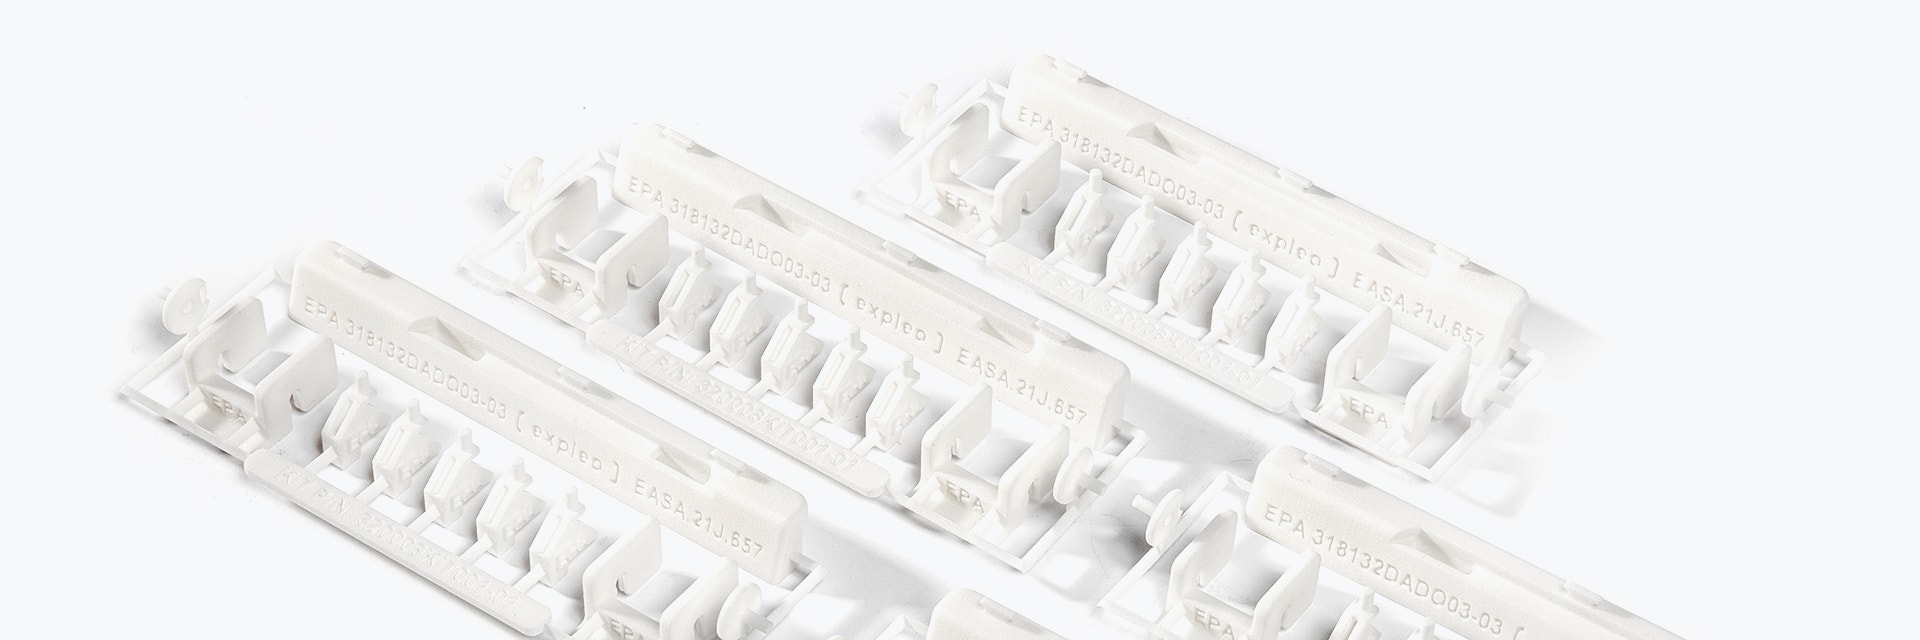 Una serie di kit di riparazione stampati in 3D con EASA 21.Marchi di qualità J. Il kit contiene piccoli componenti bianchi in plastica in poliammide ignifuga, progettati da Expleo. Questi componenti sono utilizzati per sostituire le chiusure che comunemente si rompono sui pannelli di rivestimento inferiori dei Boeing 737.